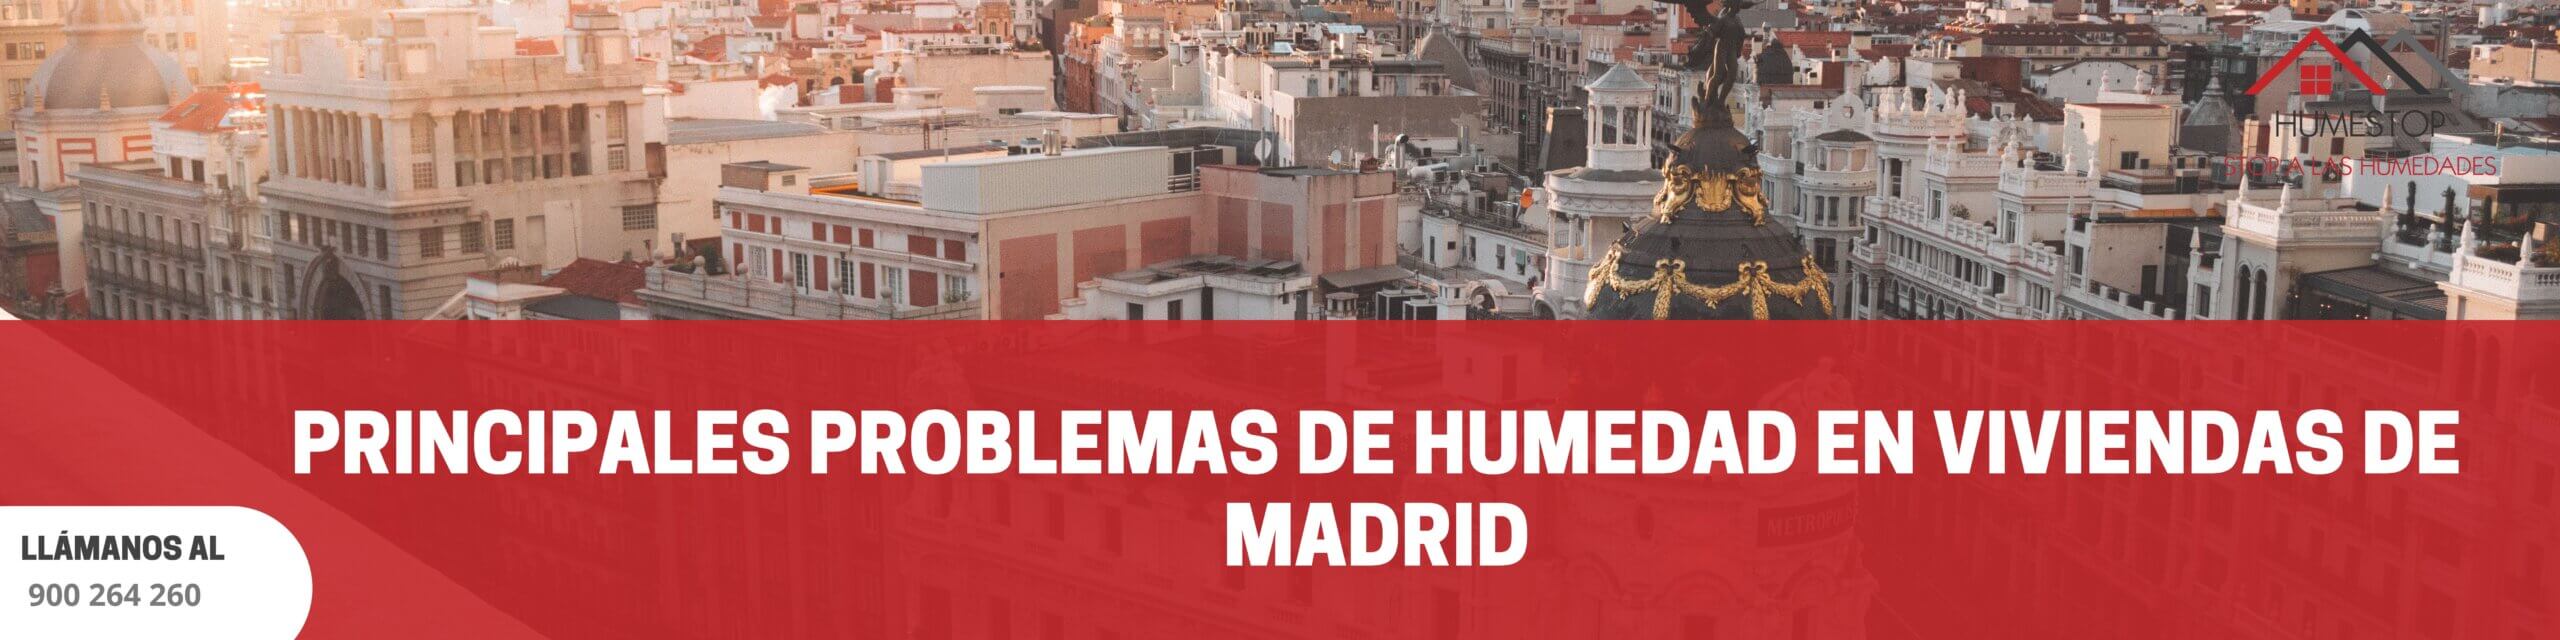 Principales problemas de humedad en viviendas de Madrid